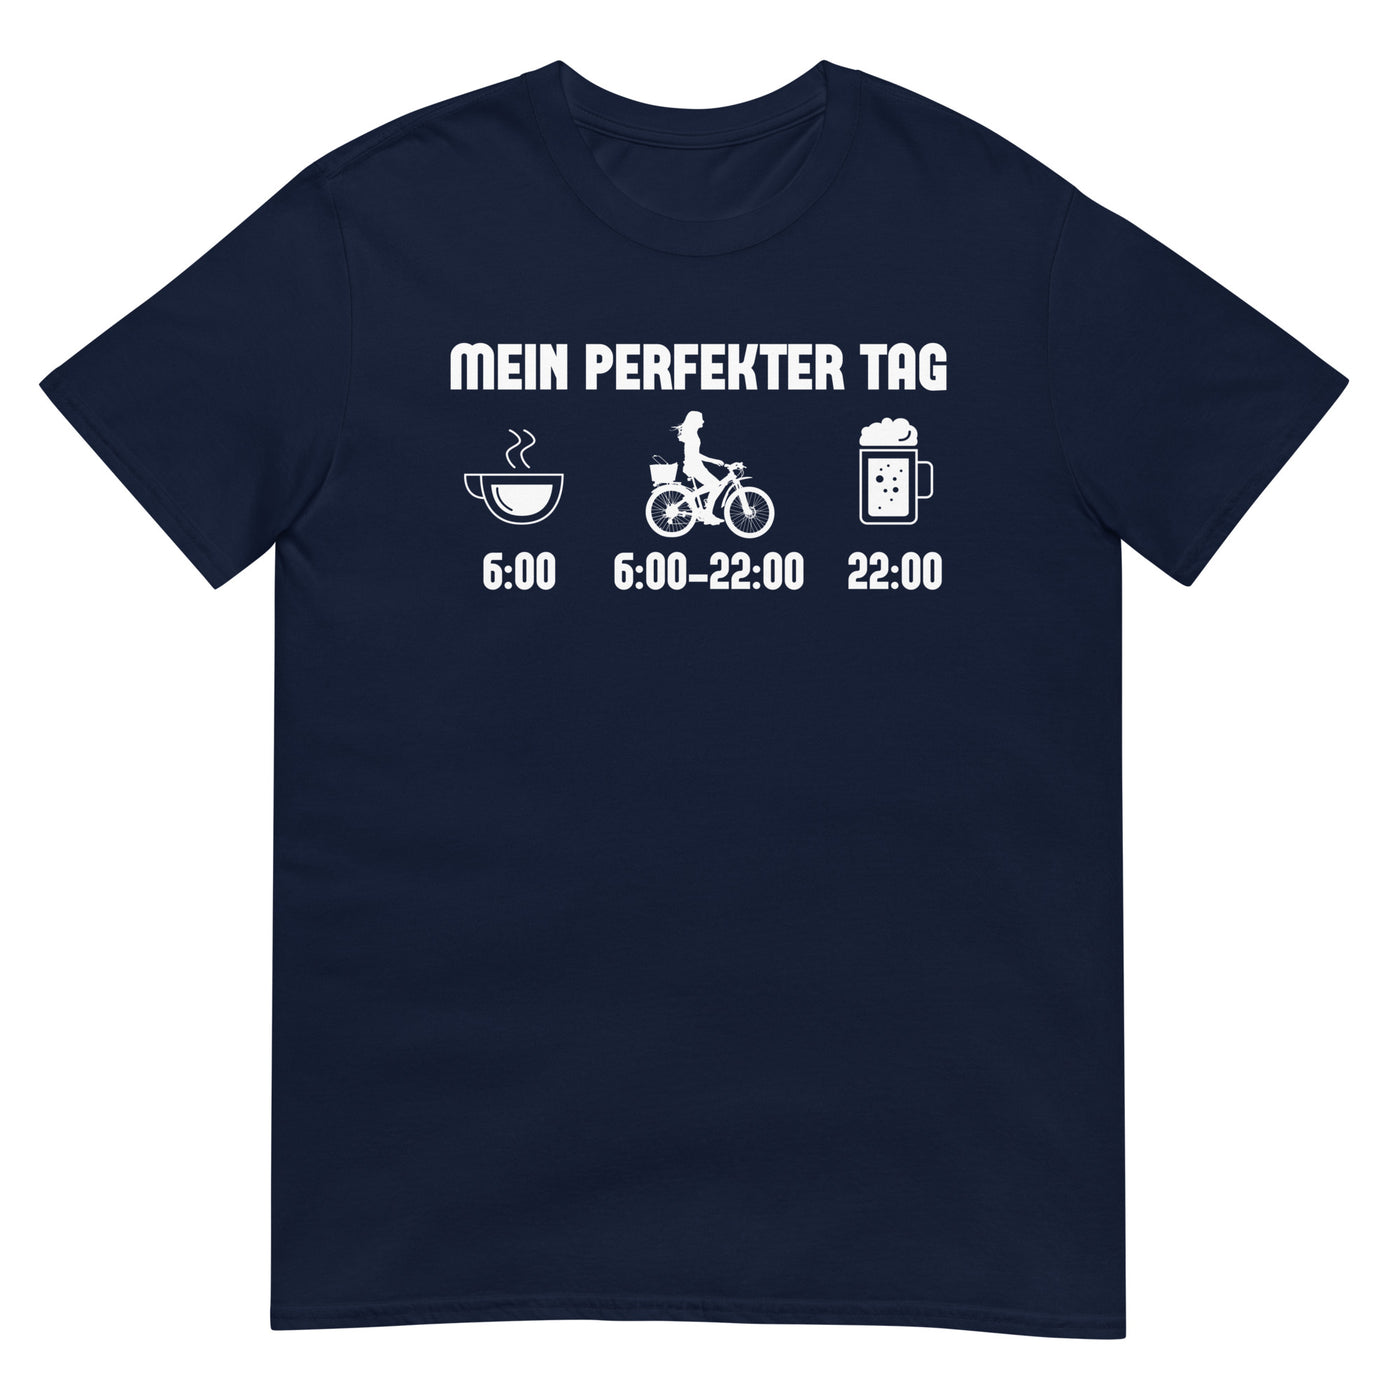 Mein Perfekter Tag 2 - T-Shirt (Unisex) fahrrad xxx yyy zzz Navy